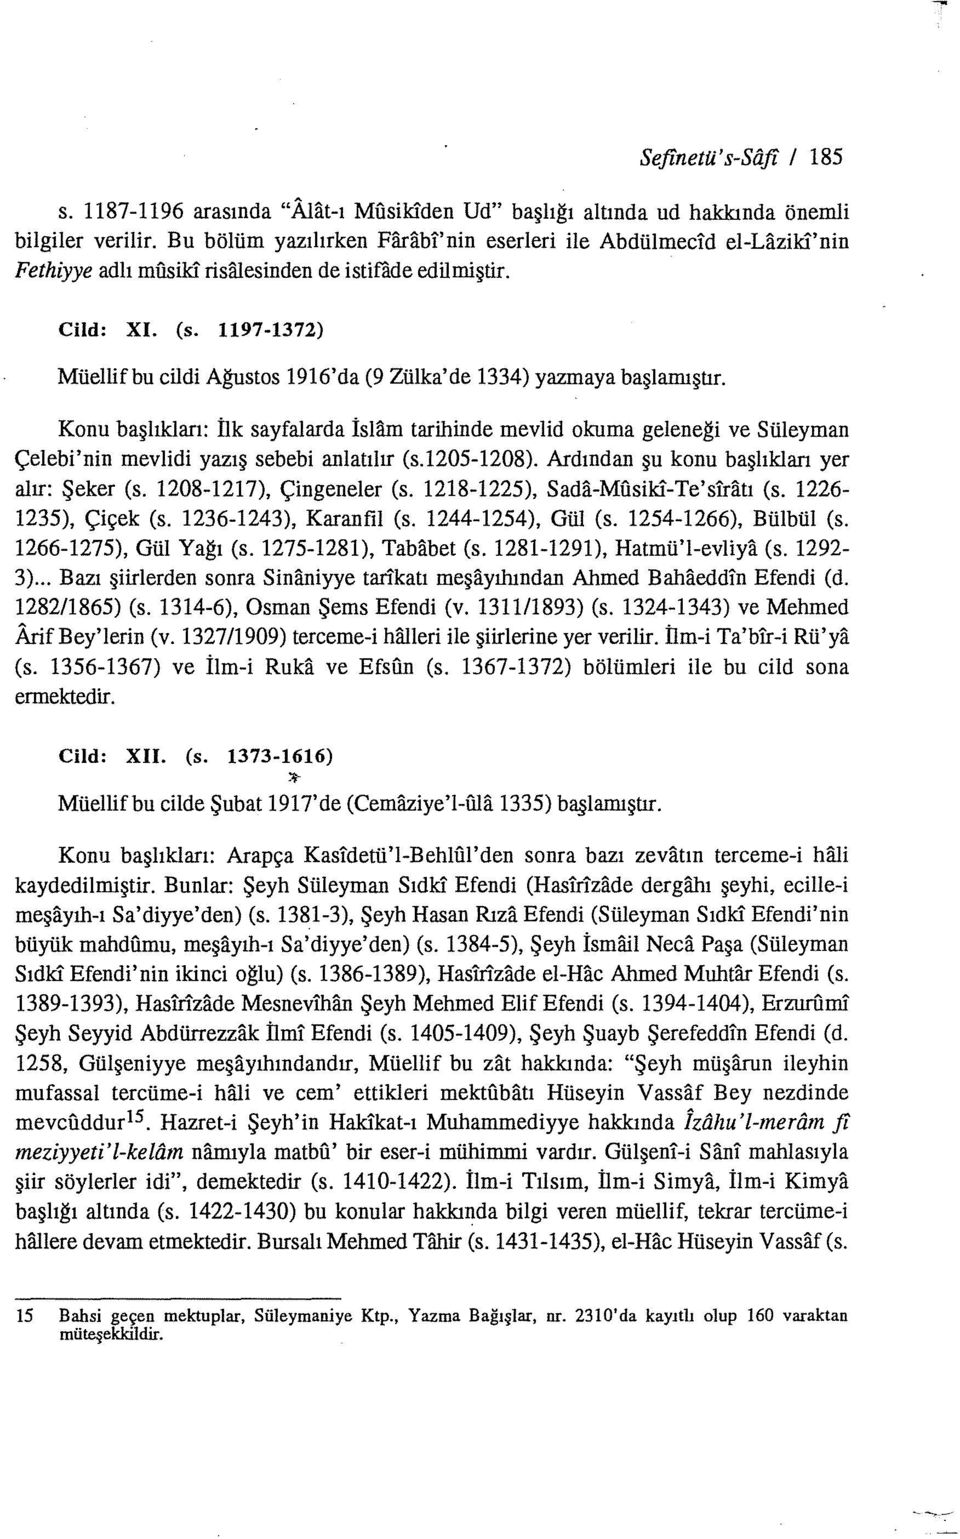 1197-1372) Müellifbu cildi Ağustos 1916'da (9 Zülka'de 1334) yazmaya başlamıştır.